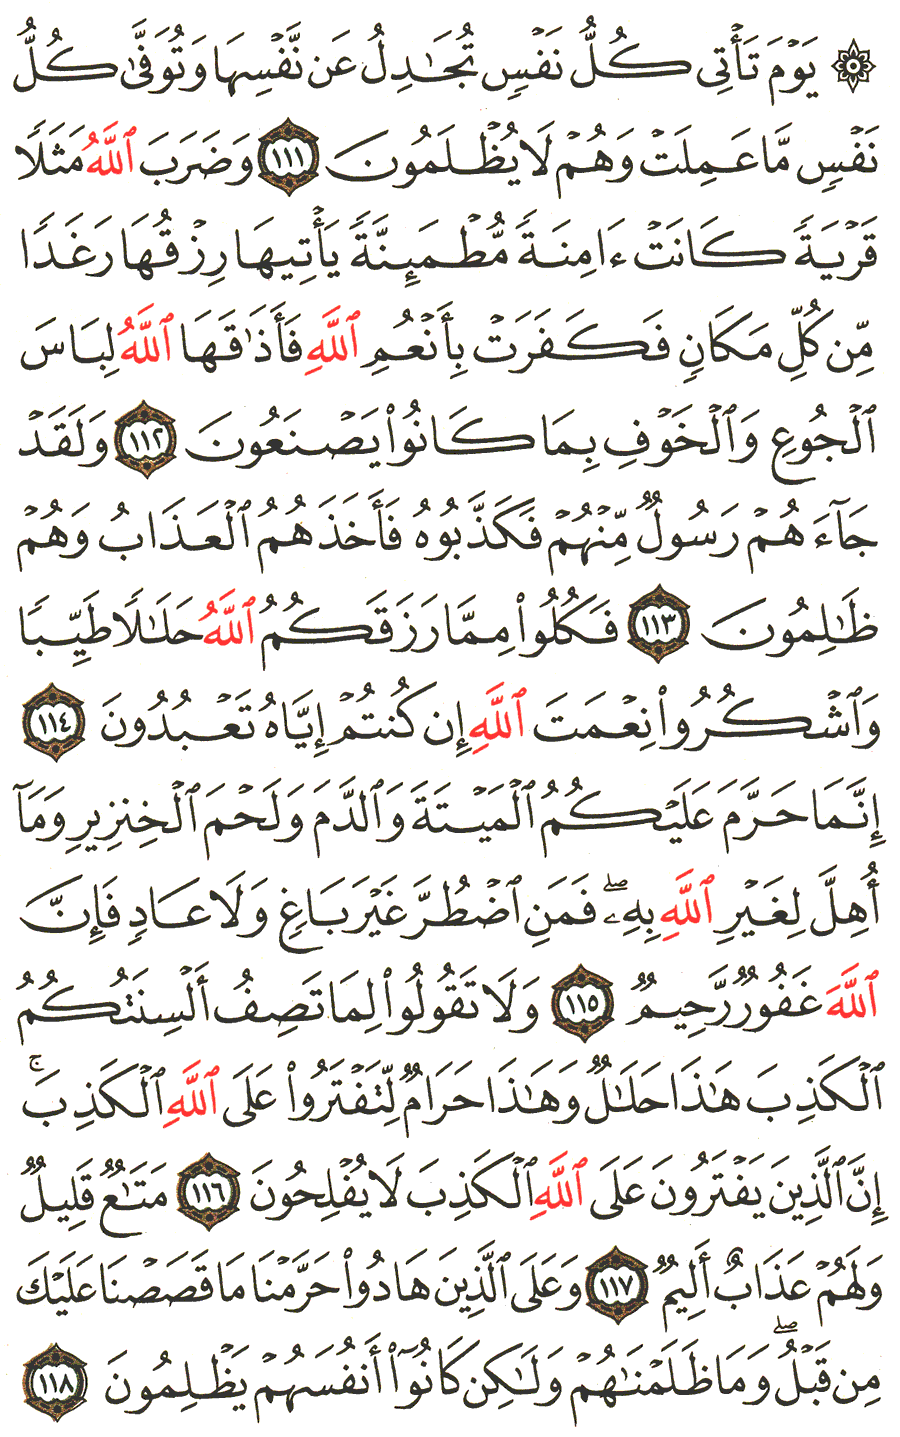 الصفحة 280 من القرآن الكريم